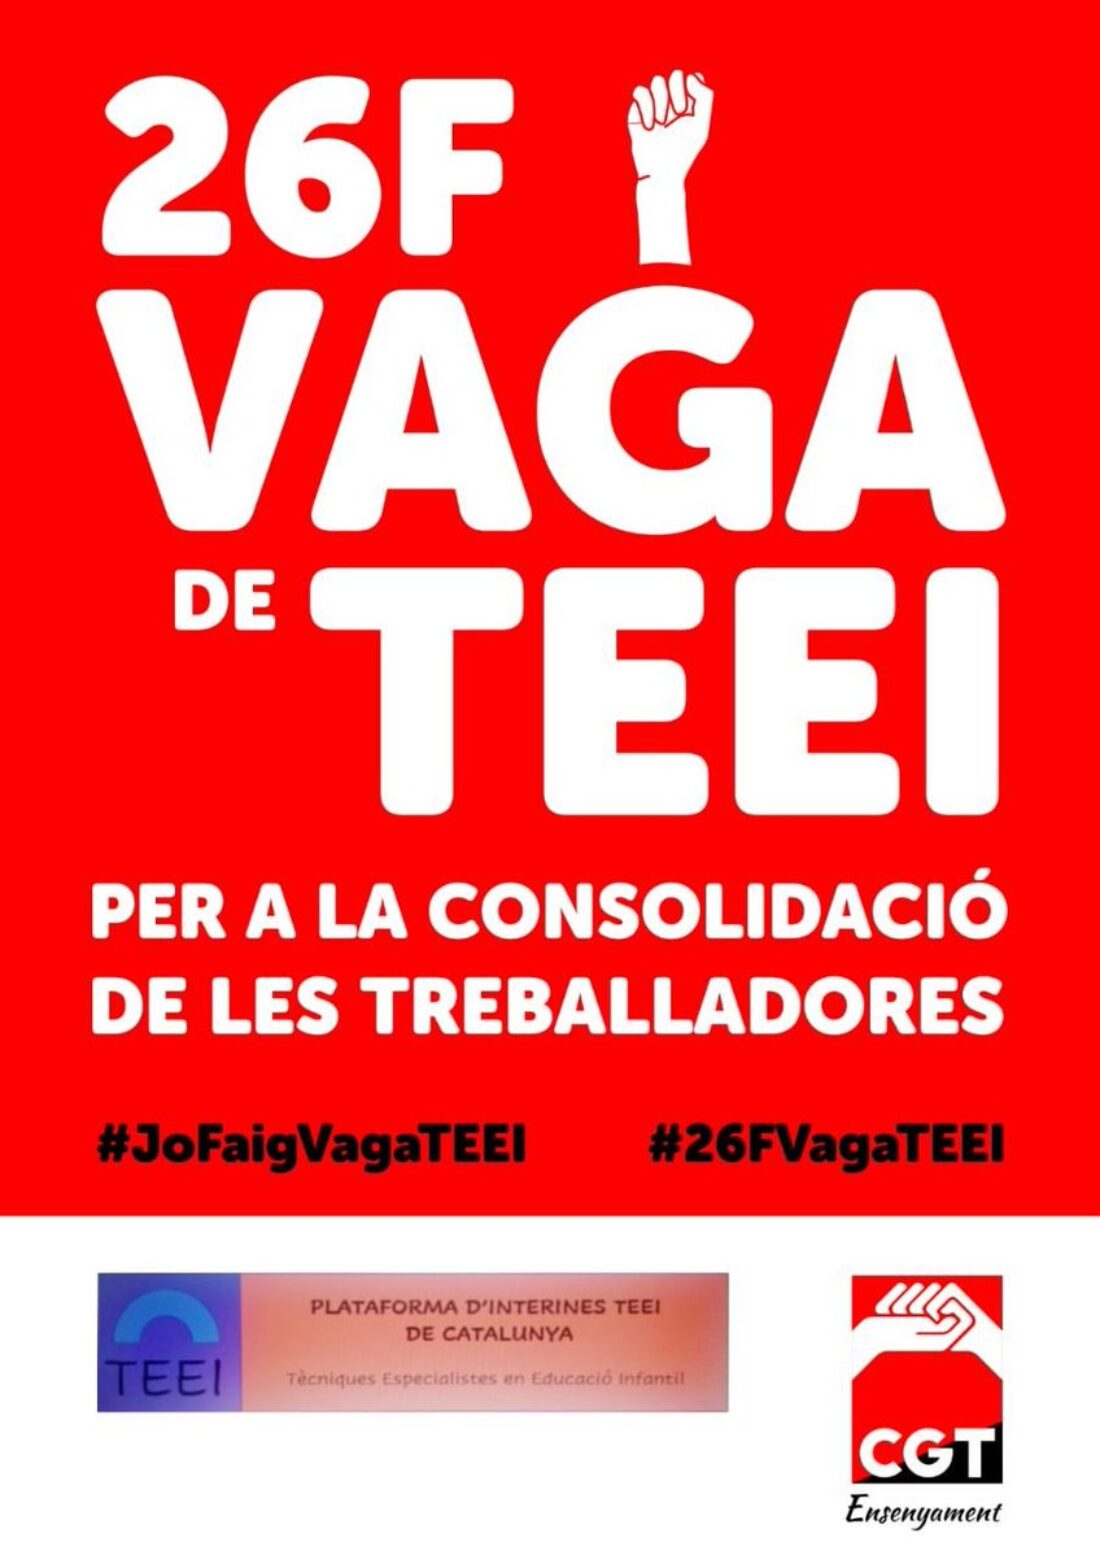 El sindicato CGT Ensenyament junto con la Plataforma d´Interines TEEI convocan la primera huelga TEEI para el viernes 26 de febrero